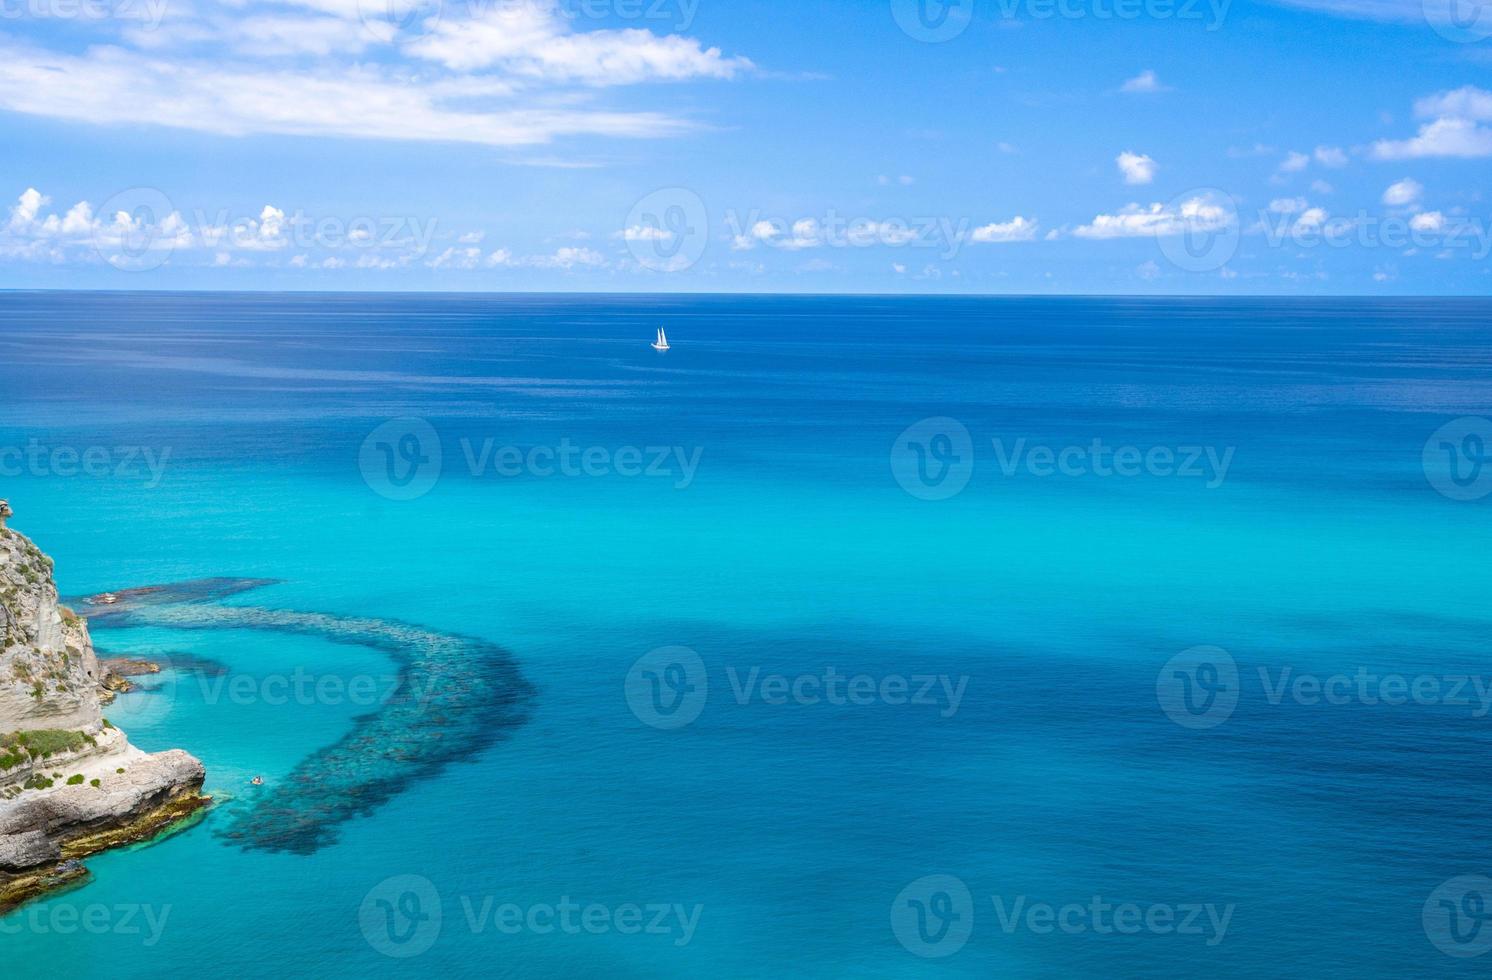 vue aérienne de la mer tyrrhénienne avec de l'eau turquoise,tropea, italie photo